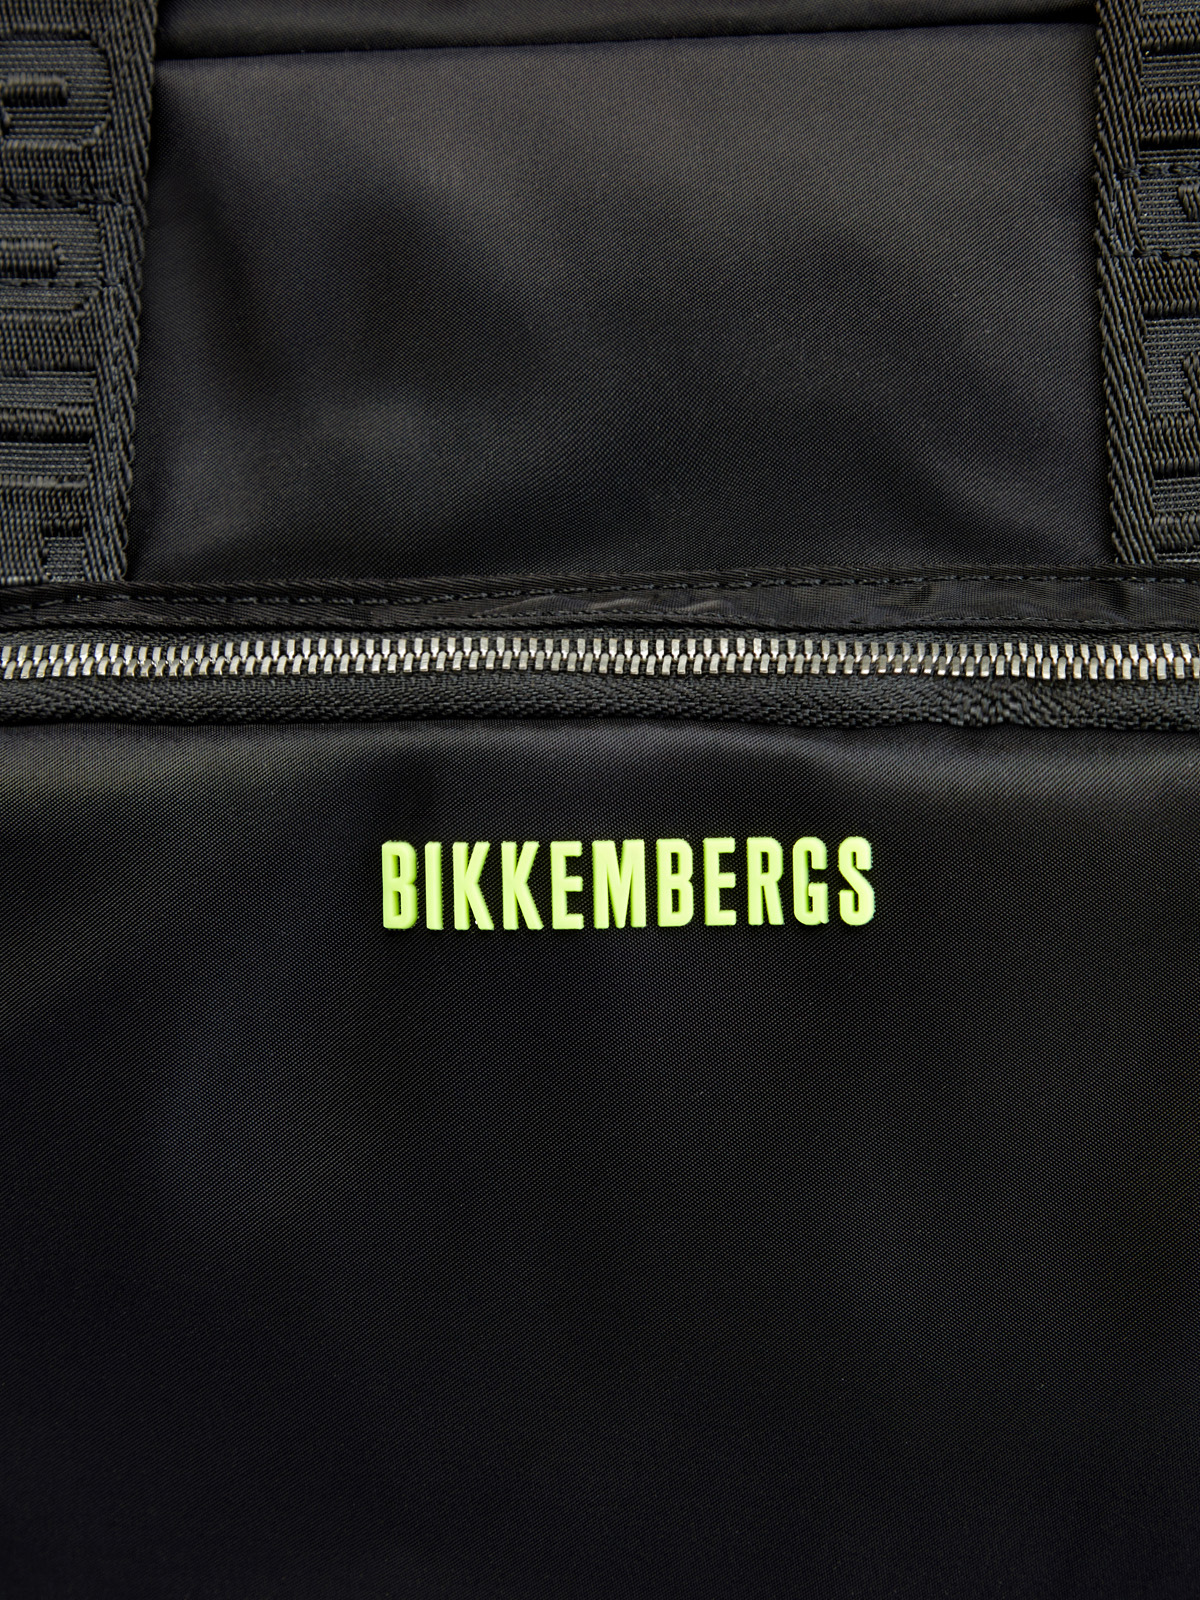 Дорожная сумка Next 3.0 в спортивном стиле BIKKEMBERGS, цвет черный, размер M - фото 6